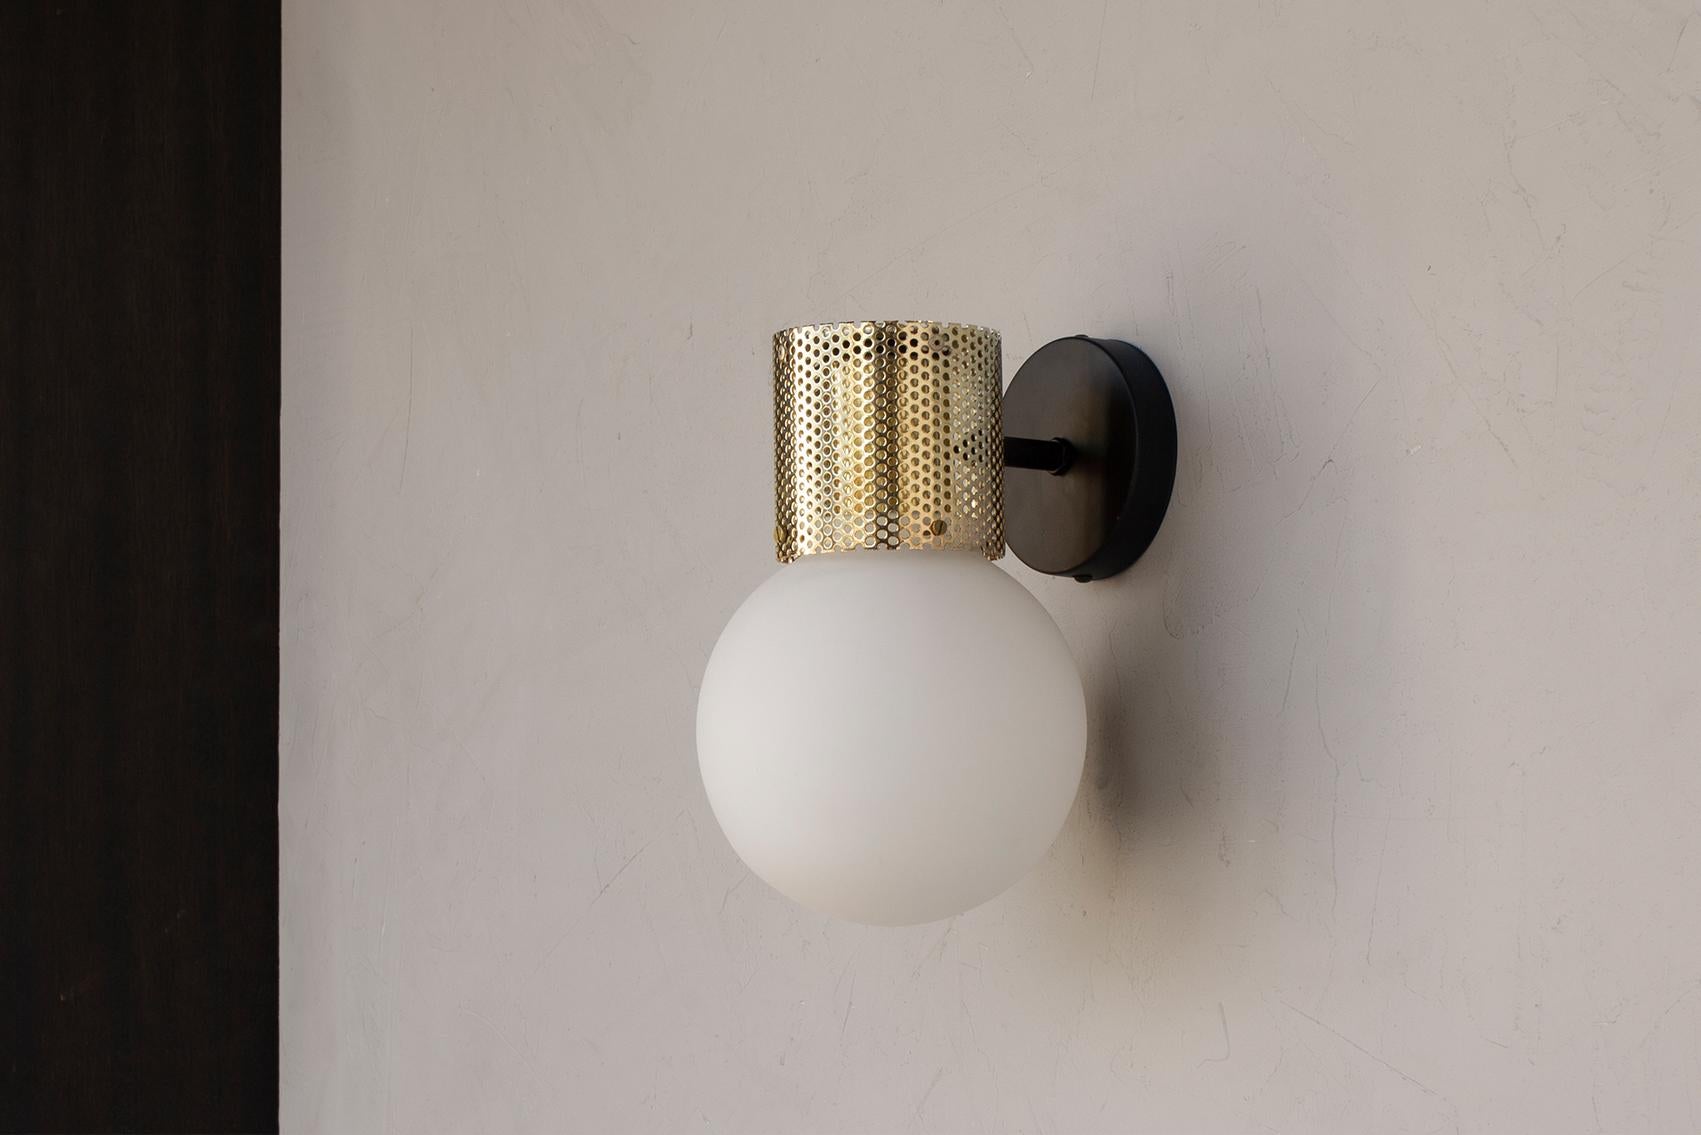 Die Kombination aus mundgeblasenem Opalglas und einem perforierten Metallgehäuse macht Perf Sconce zu einer elementaren und vielseitigen dekorativen Leuchte.
Die mit einer energiesparenden LED-Lampe ausgestattete Perf Pendant ist in 3 Ausführungen